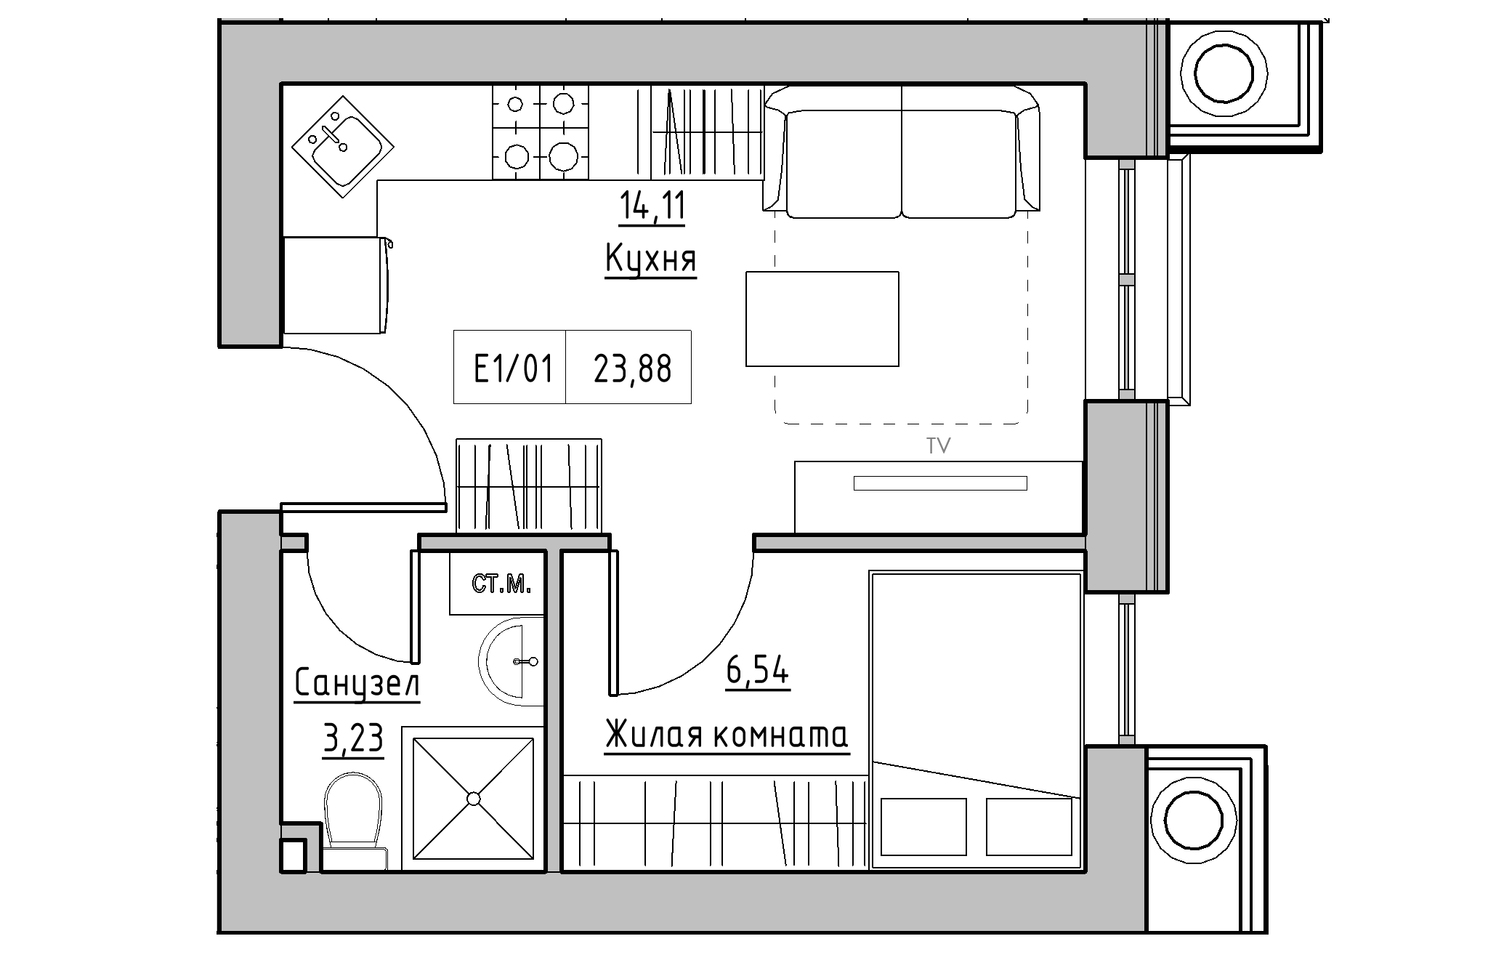 Планировка 1-к квартира площей 23.88м2, KS-010-02/0011.